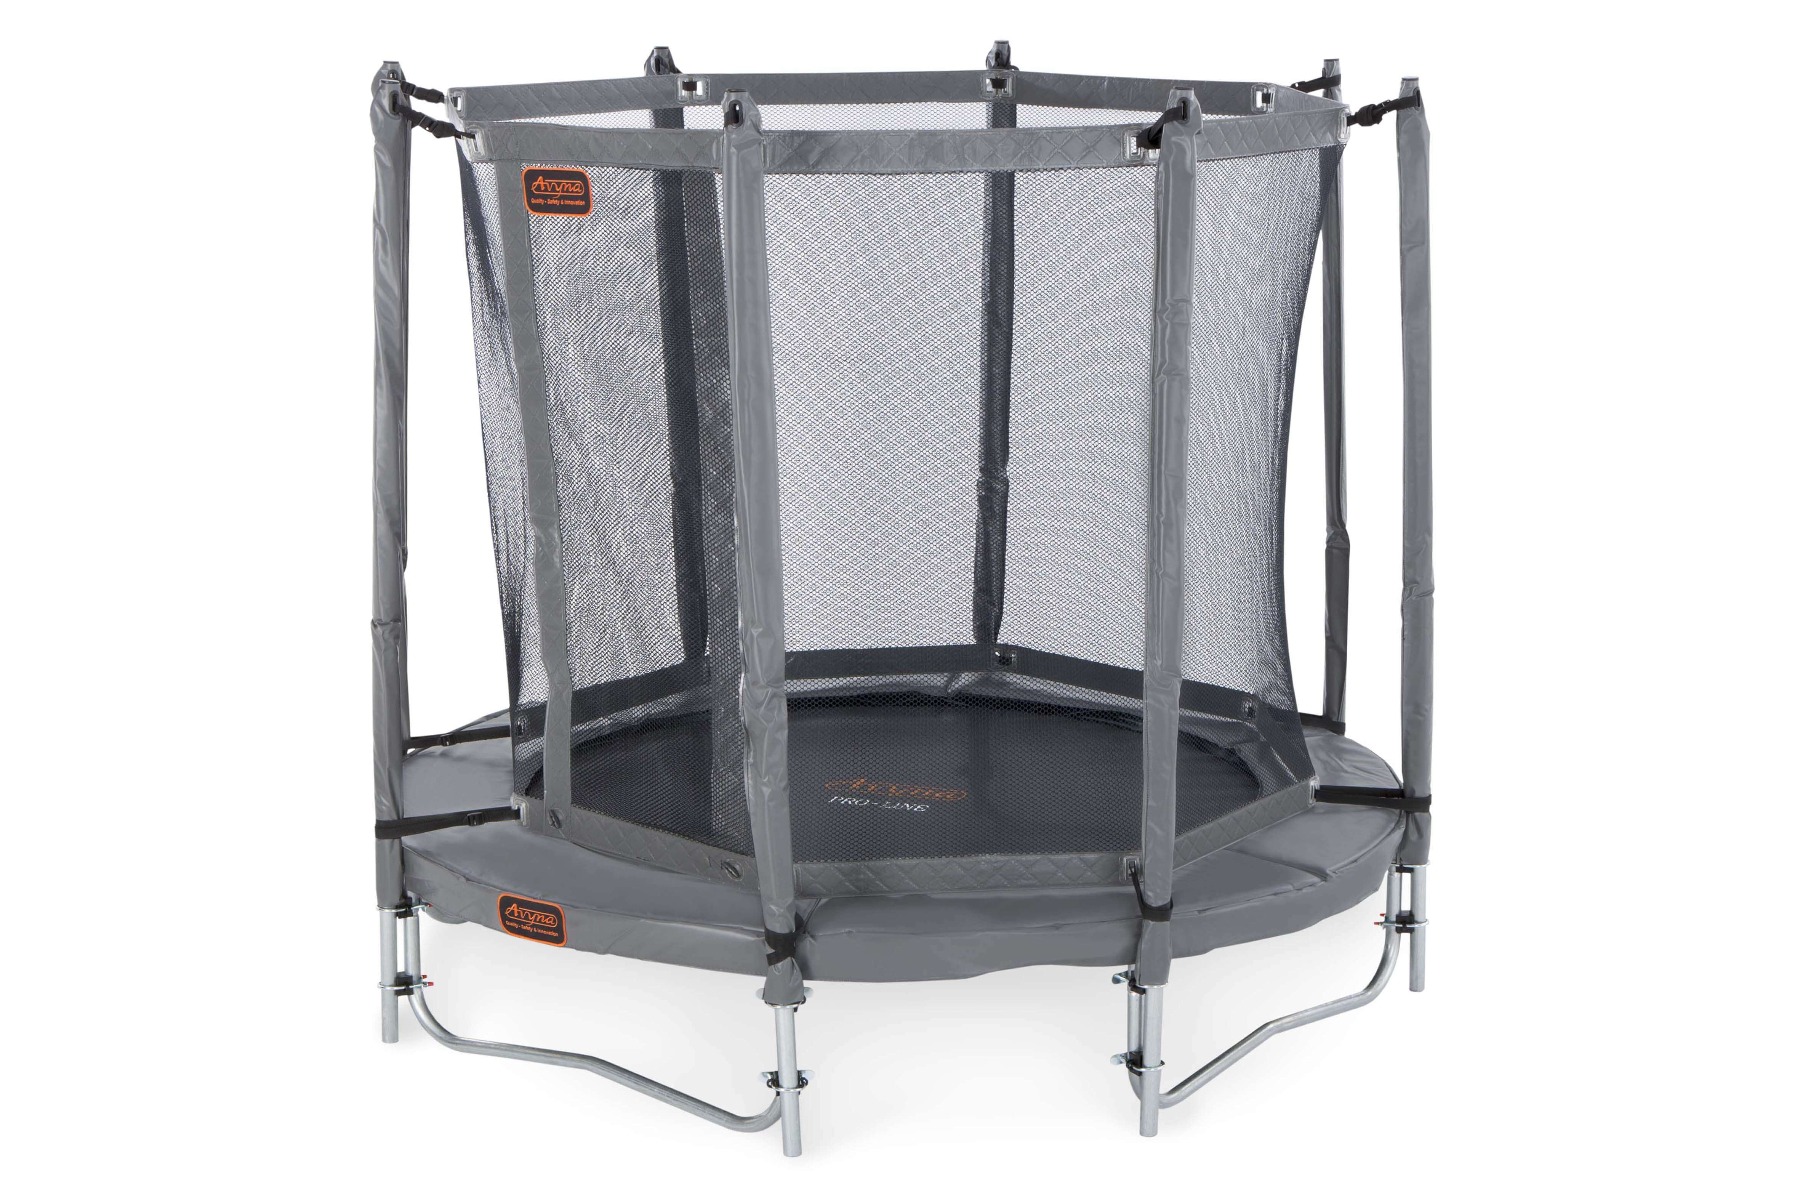 Avyna Pro-Line trampoline set 06 Ø200cm + Safety Net - Grey